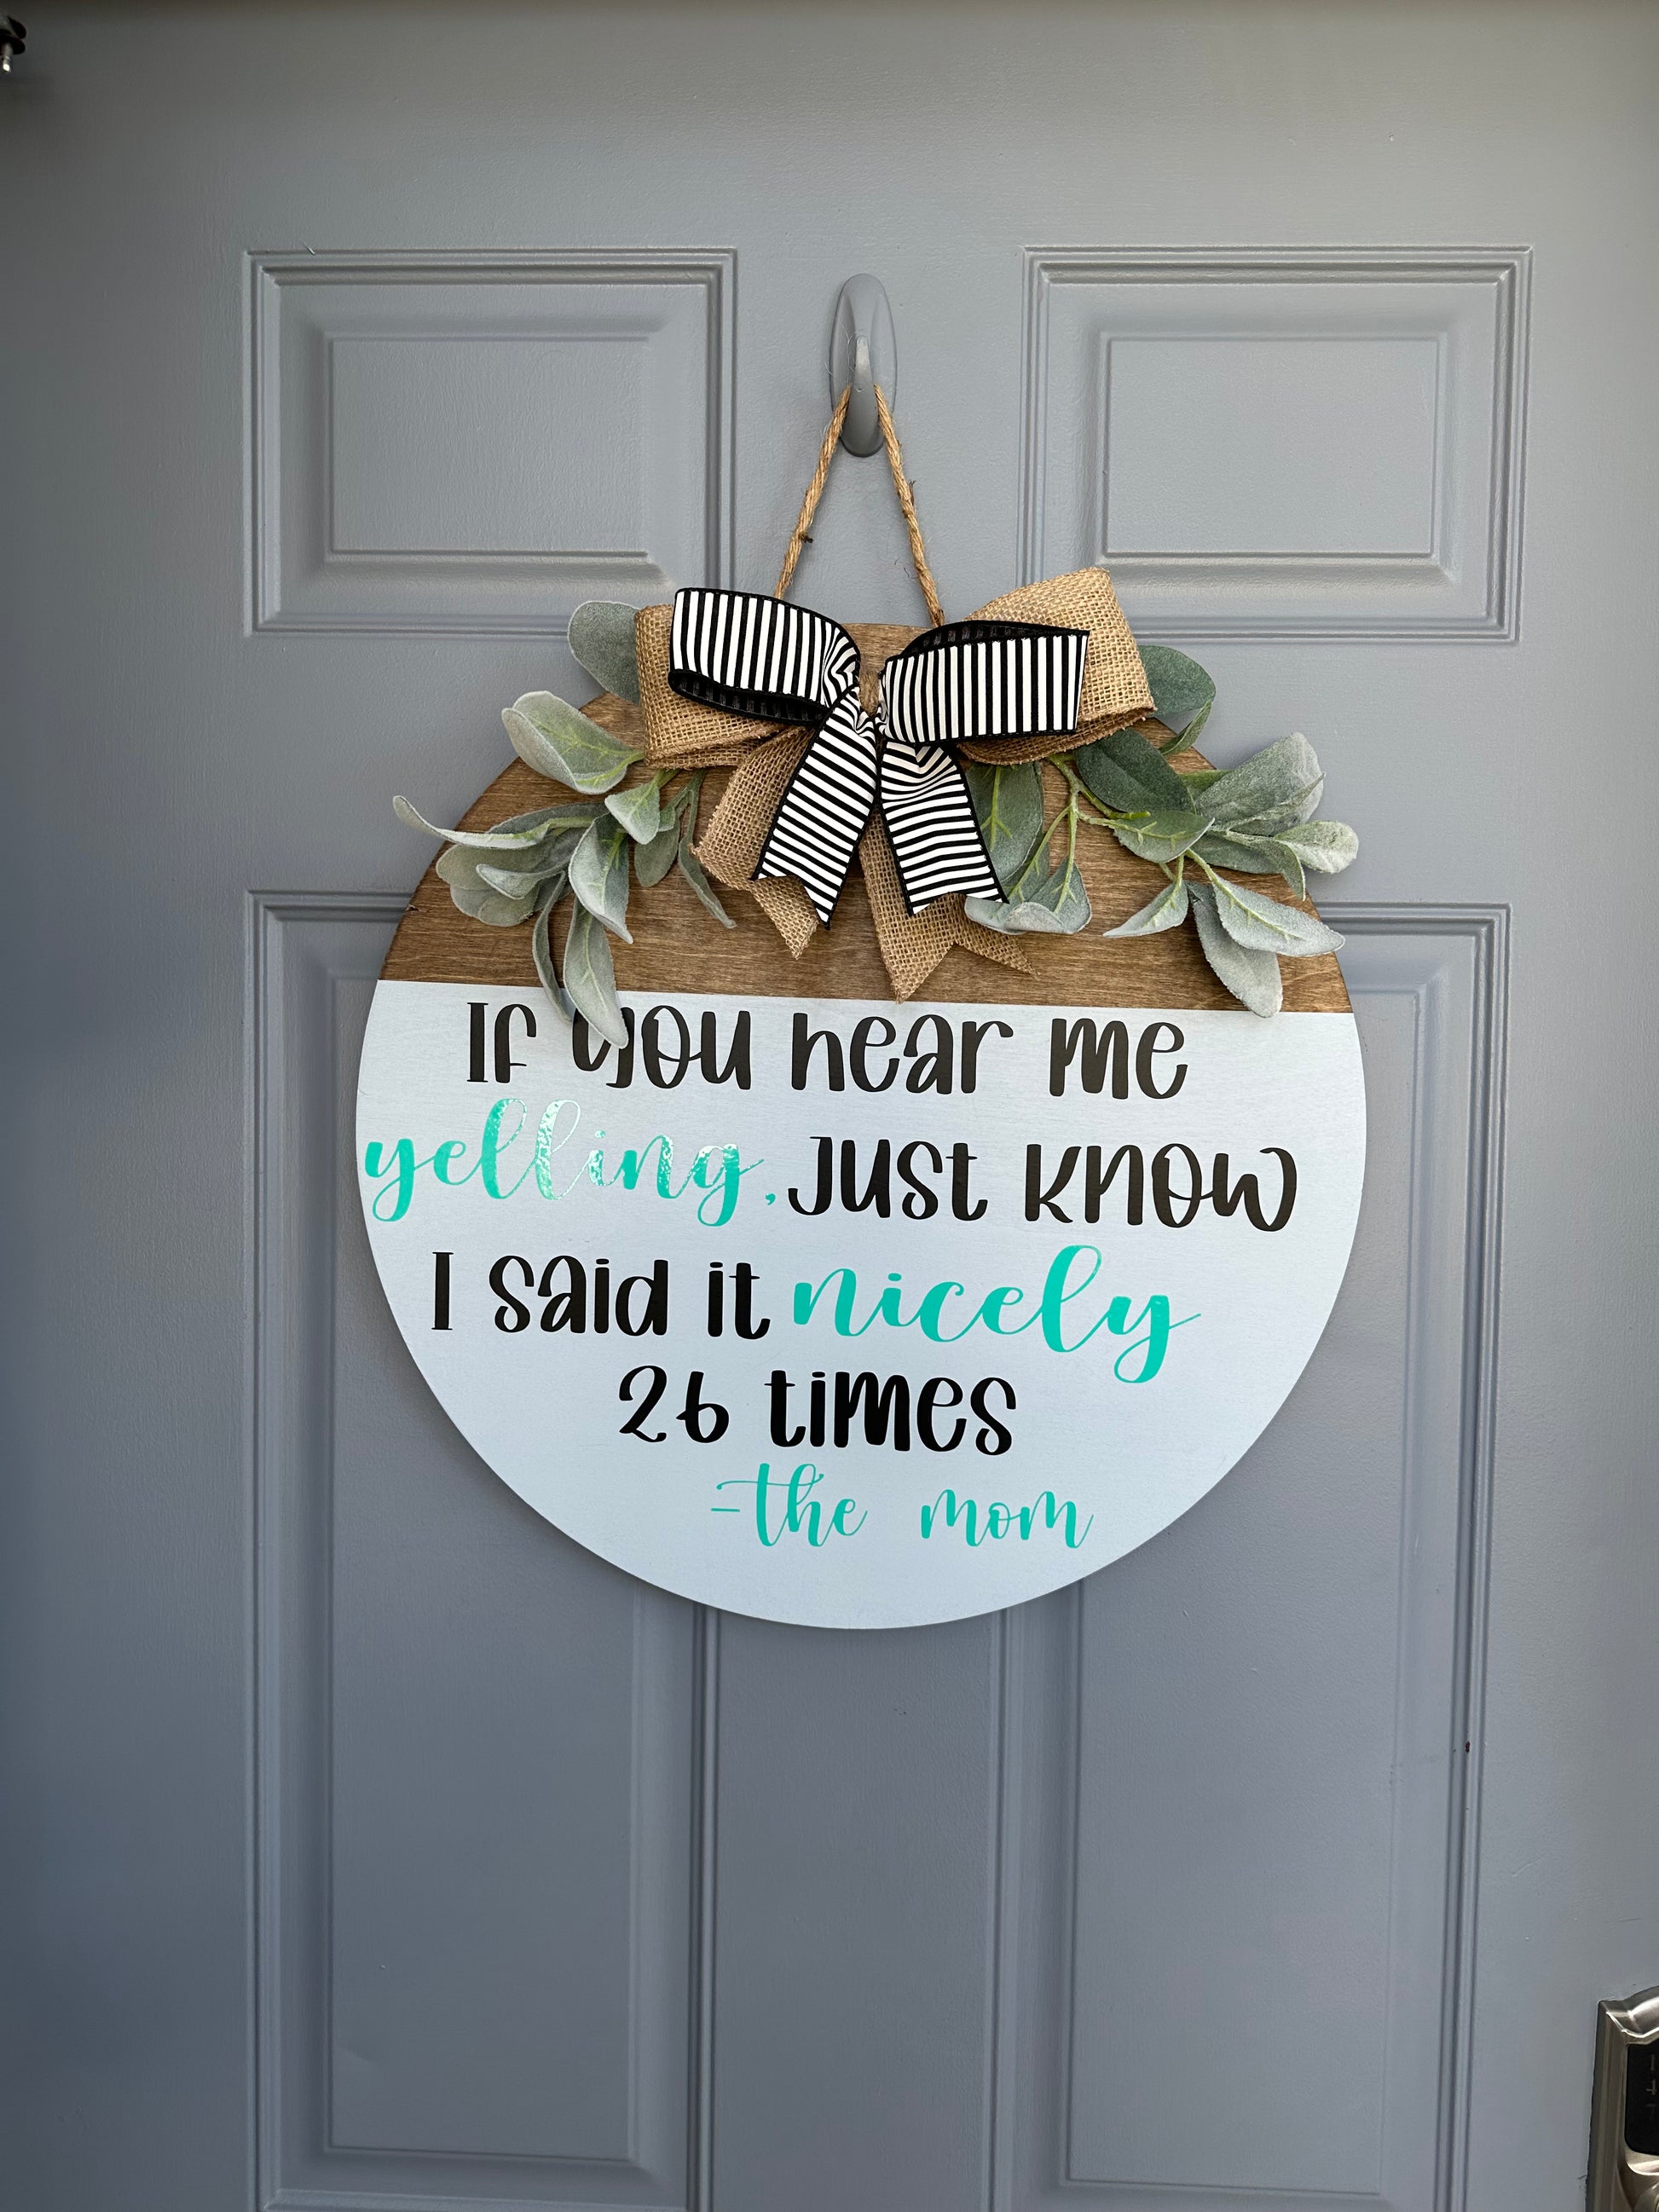 The Mom Door Hanger - Willow Love Bug Designs 